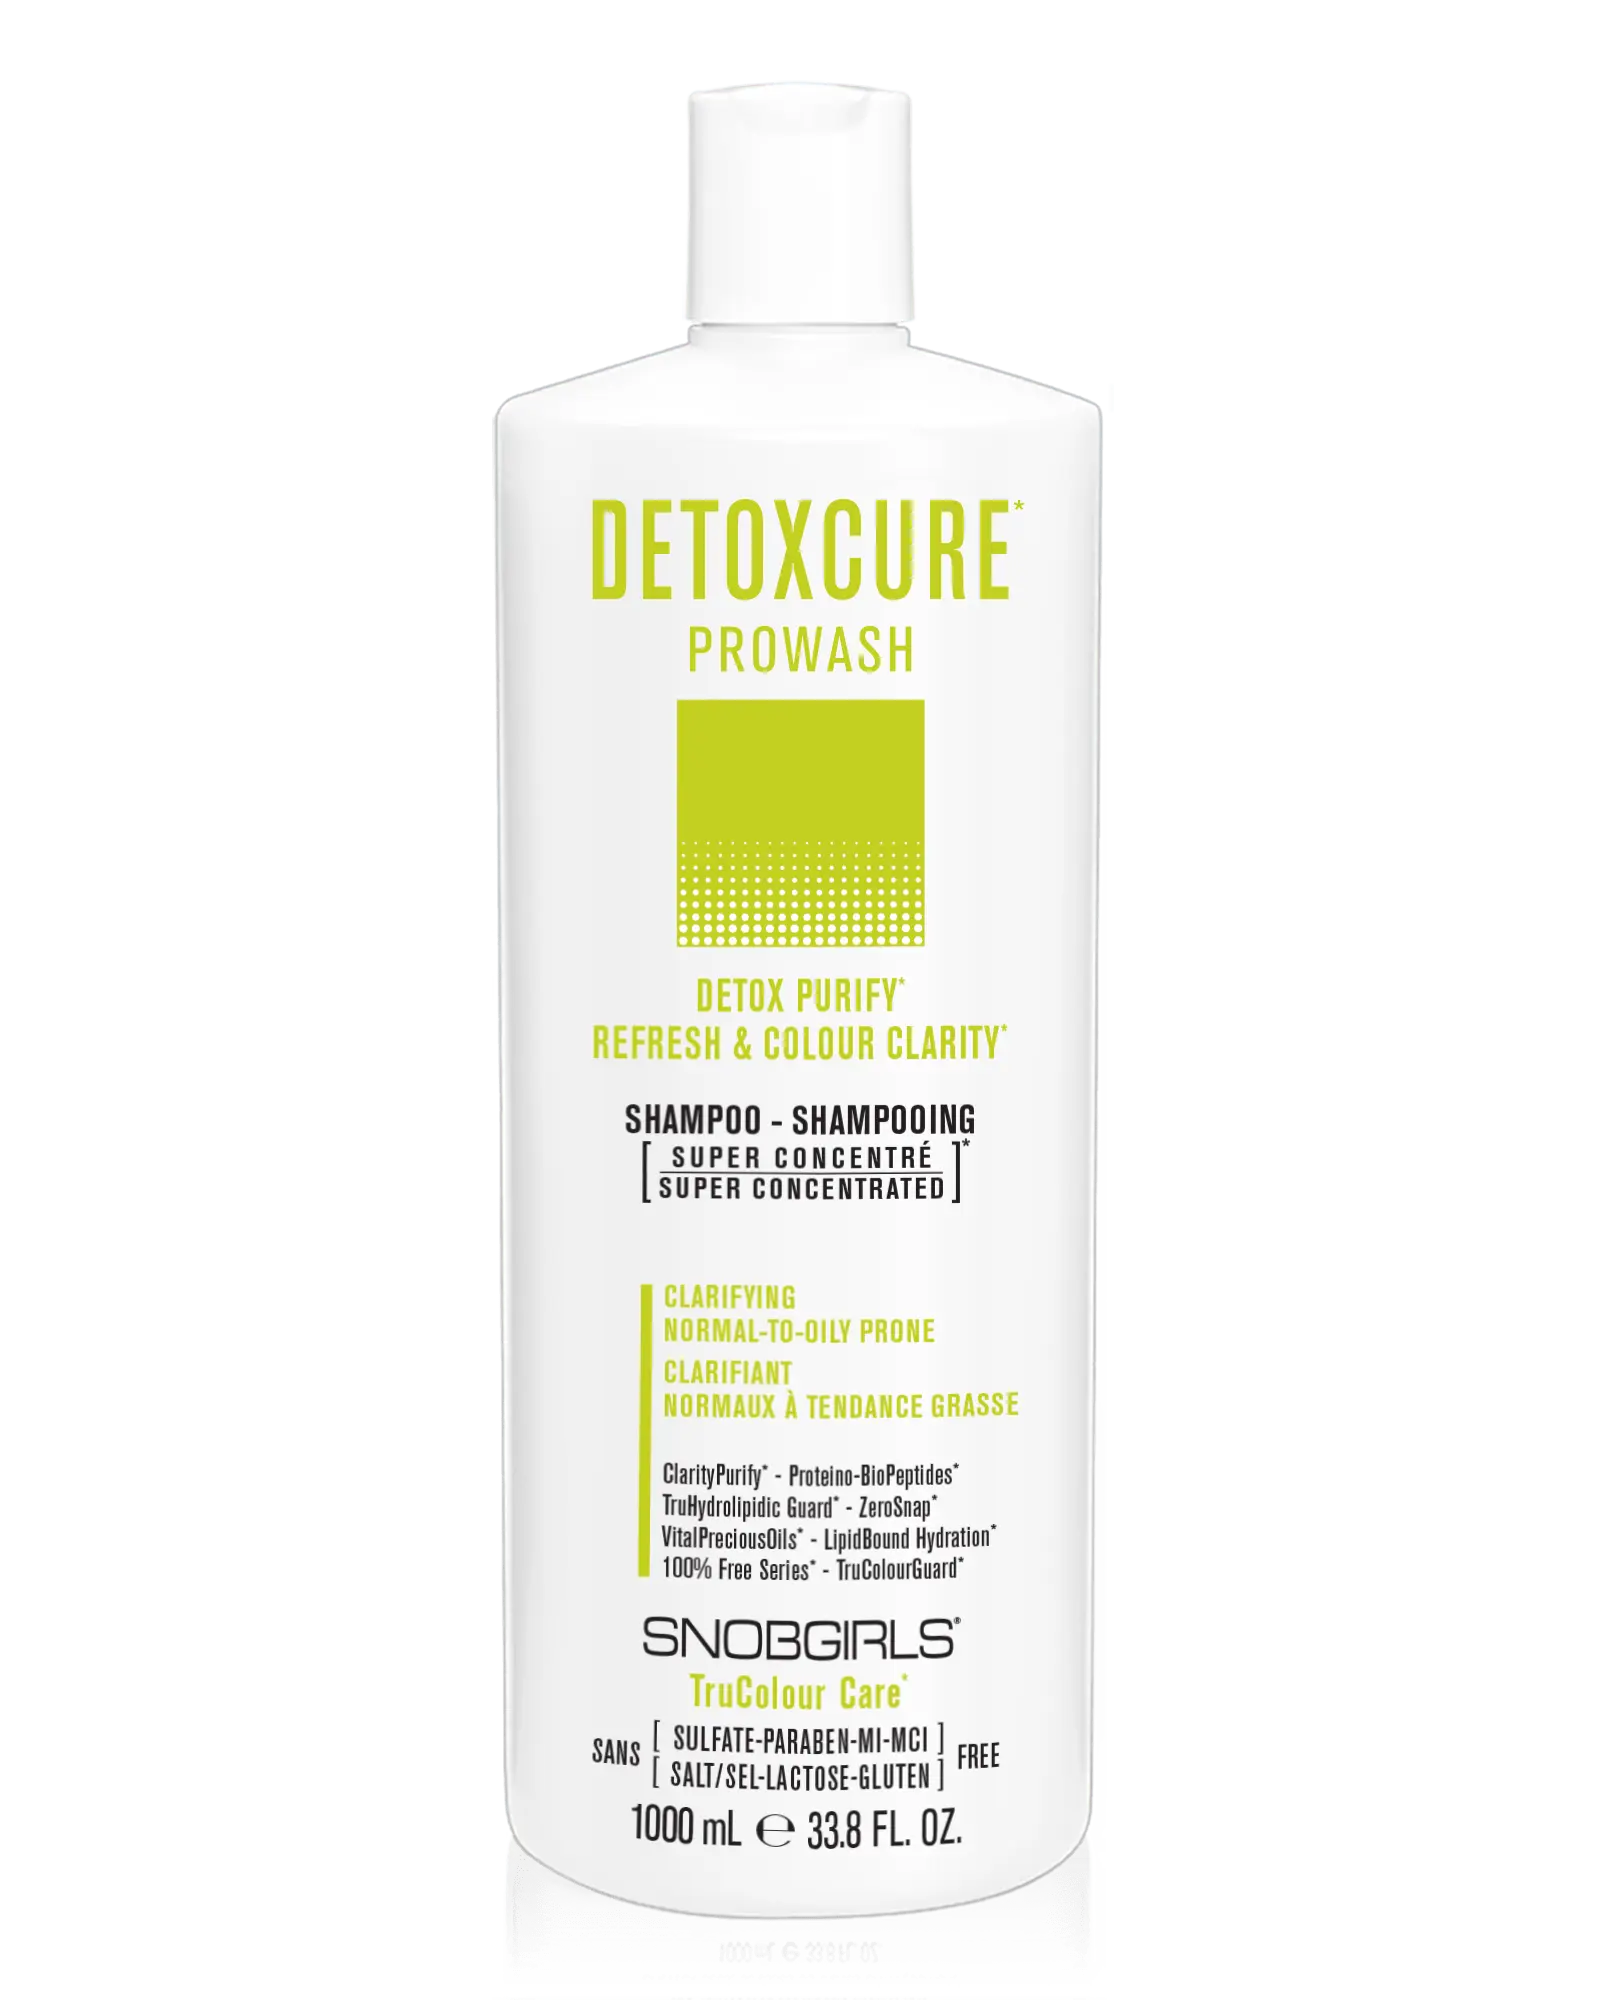 DETOXCURE Prowash (shampoo) 33.8 FL. OZ. - SNOBGIRLS.com